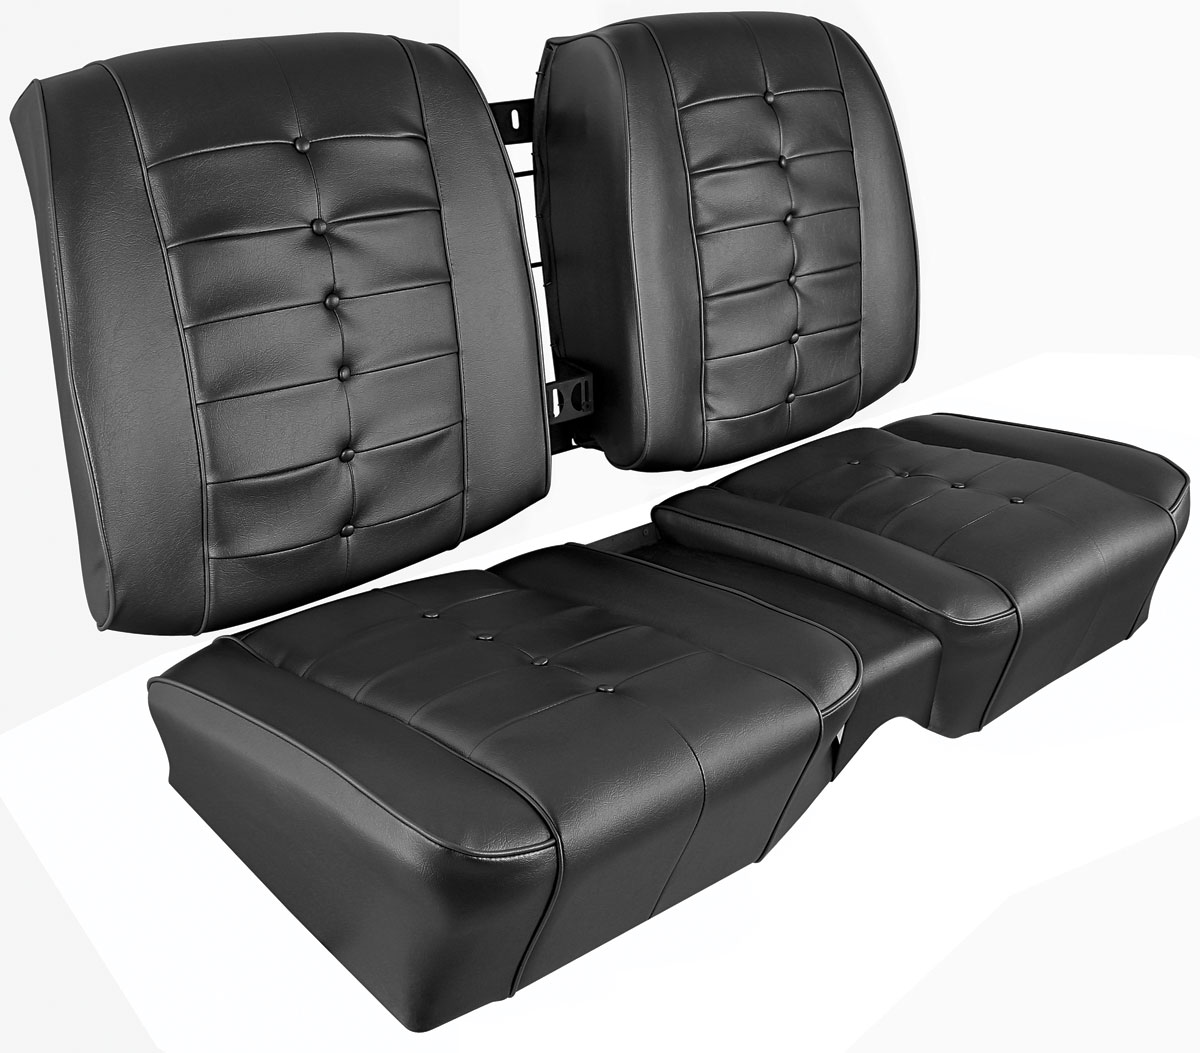 https://www.opgi.com/product/image/OP/197241/seat-upholstery-1963-riviera-rear-buckets-br02202.jpg